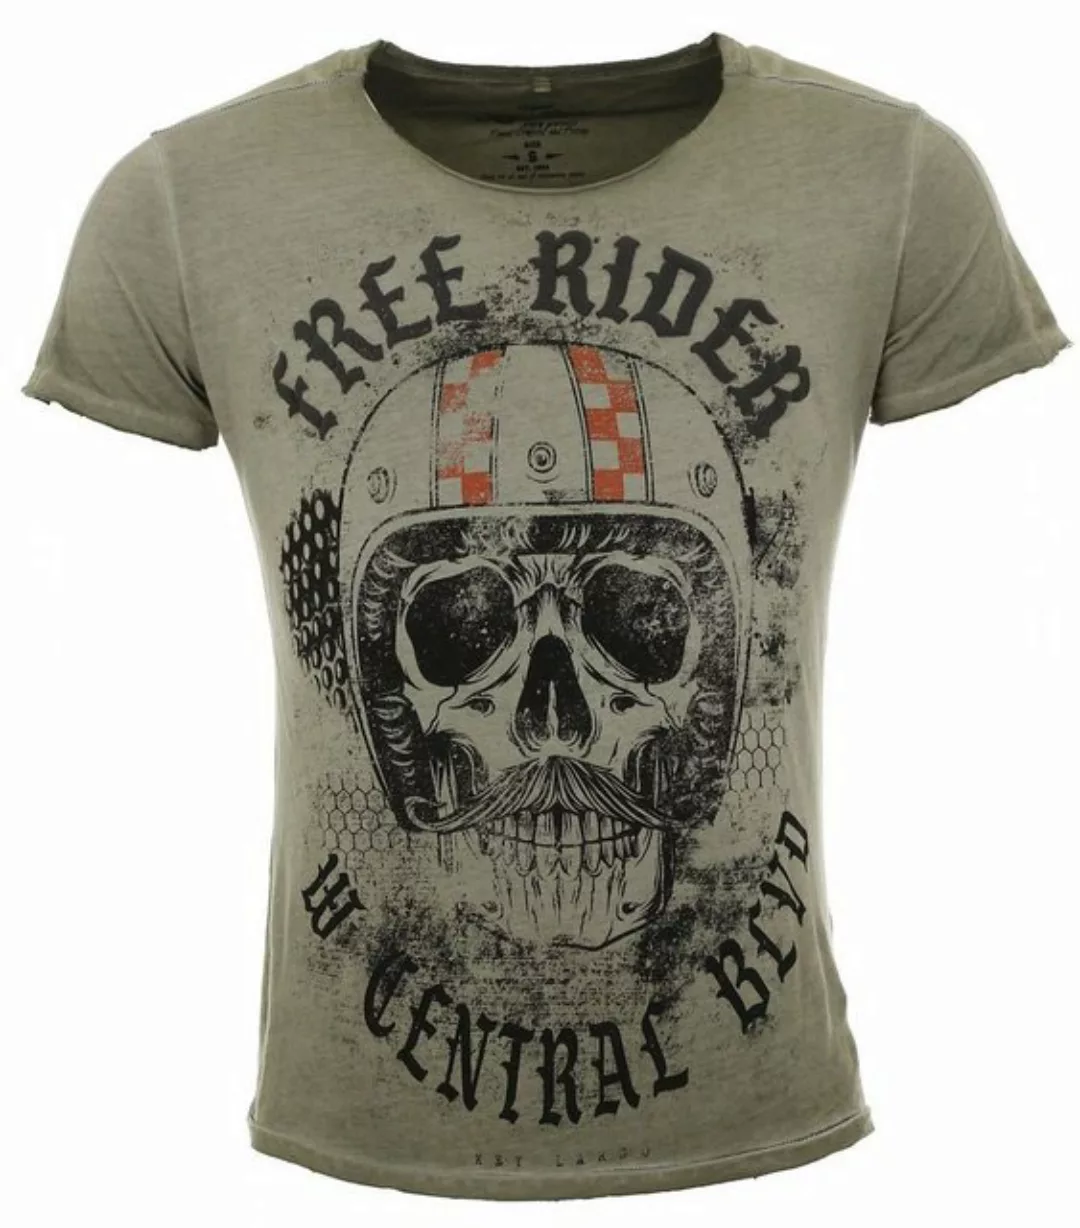 Key Largo T-Shirt für Herren Moustache Skull Totenkopf Print Motiv vintage günstig online kaufen